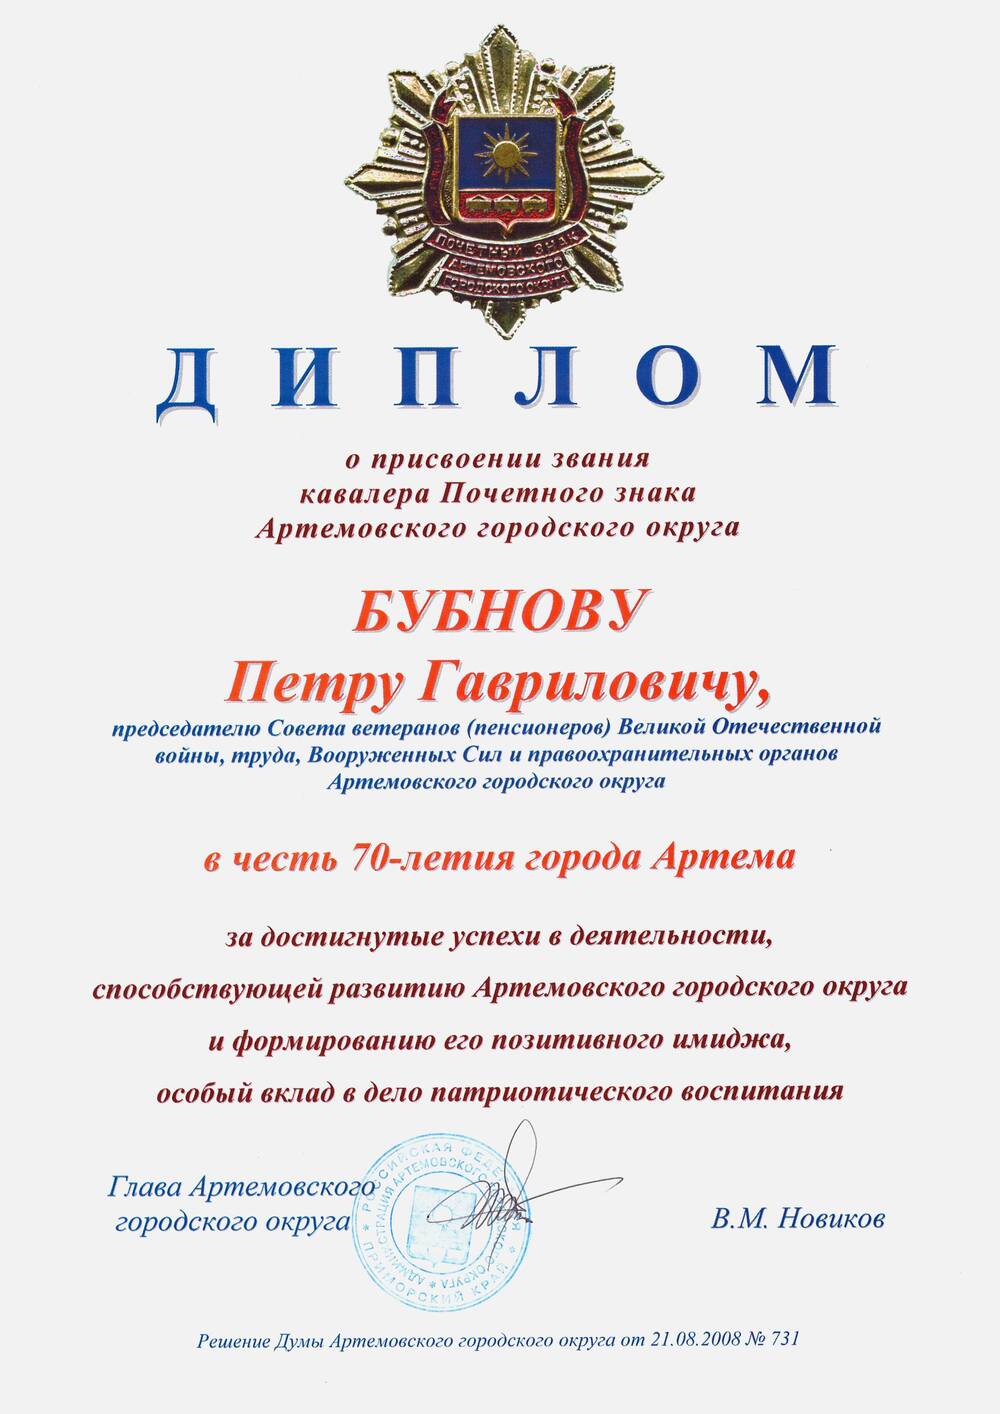 Диплом к почетному знаку Артемовского городского округа ветерана войны Бубнова П.Г.